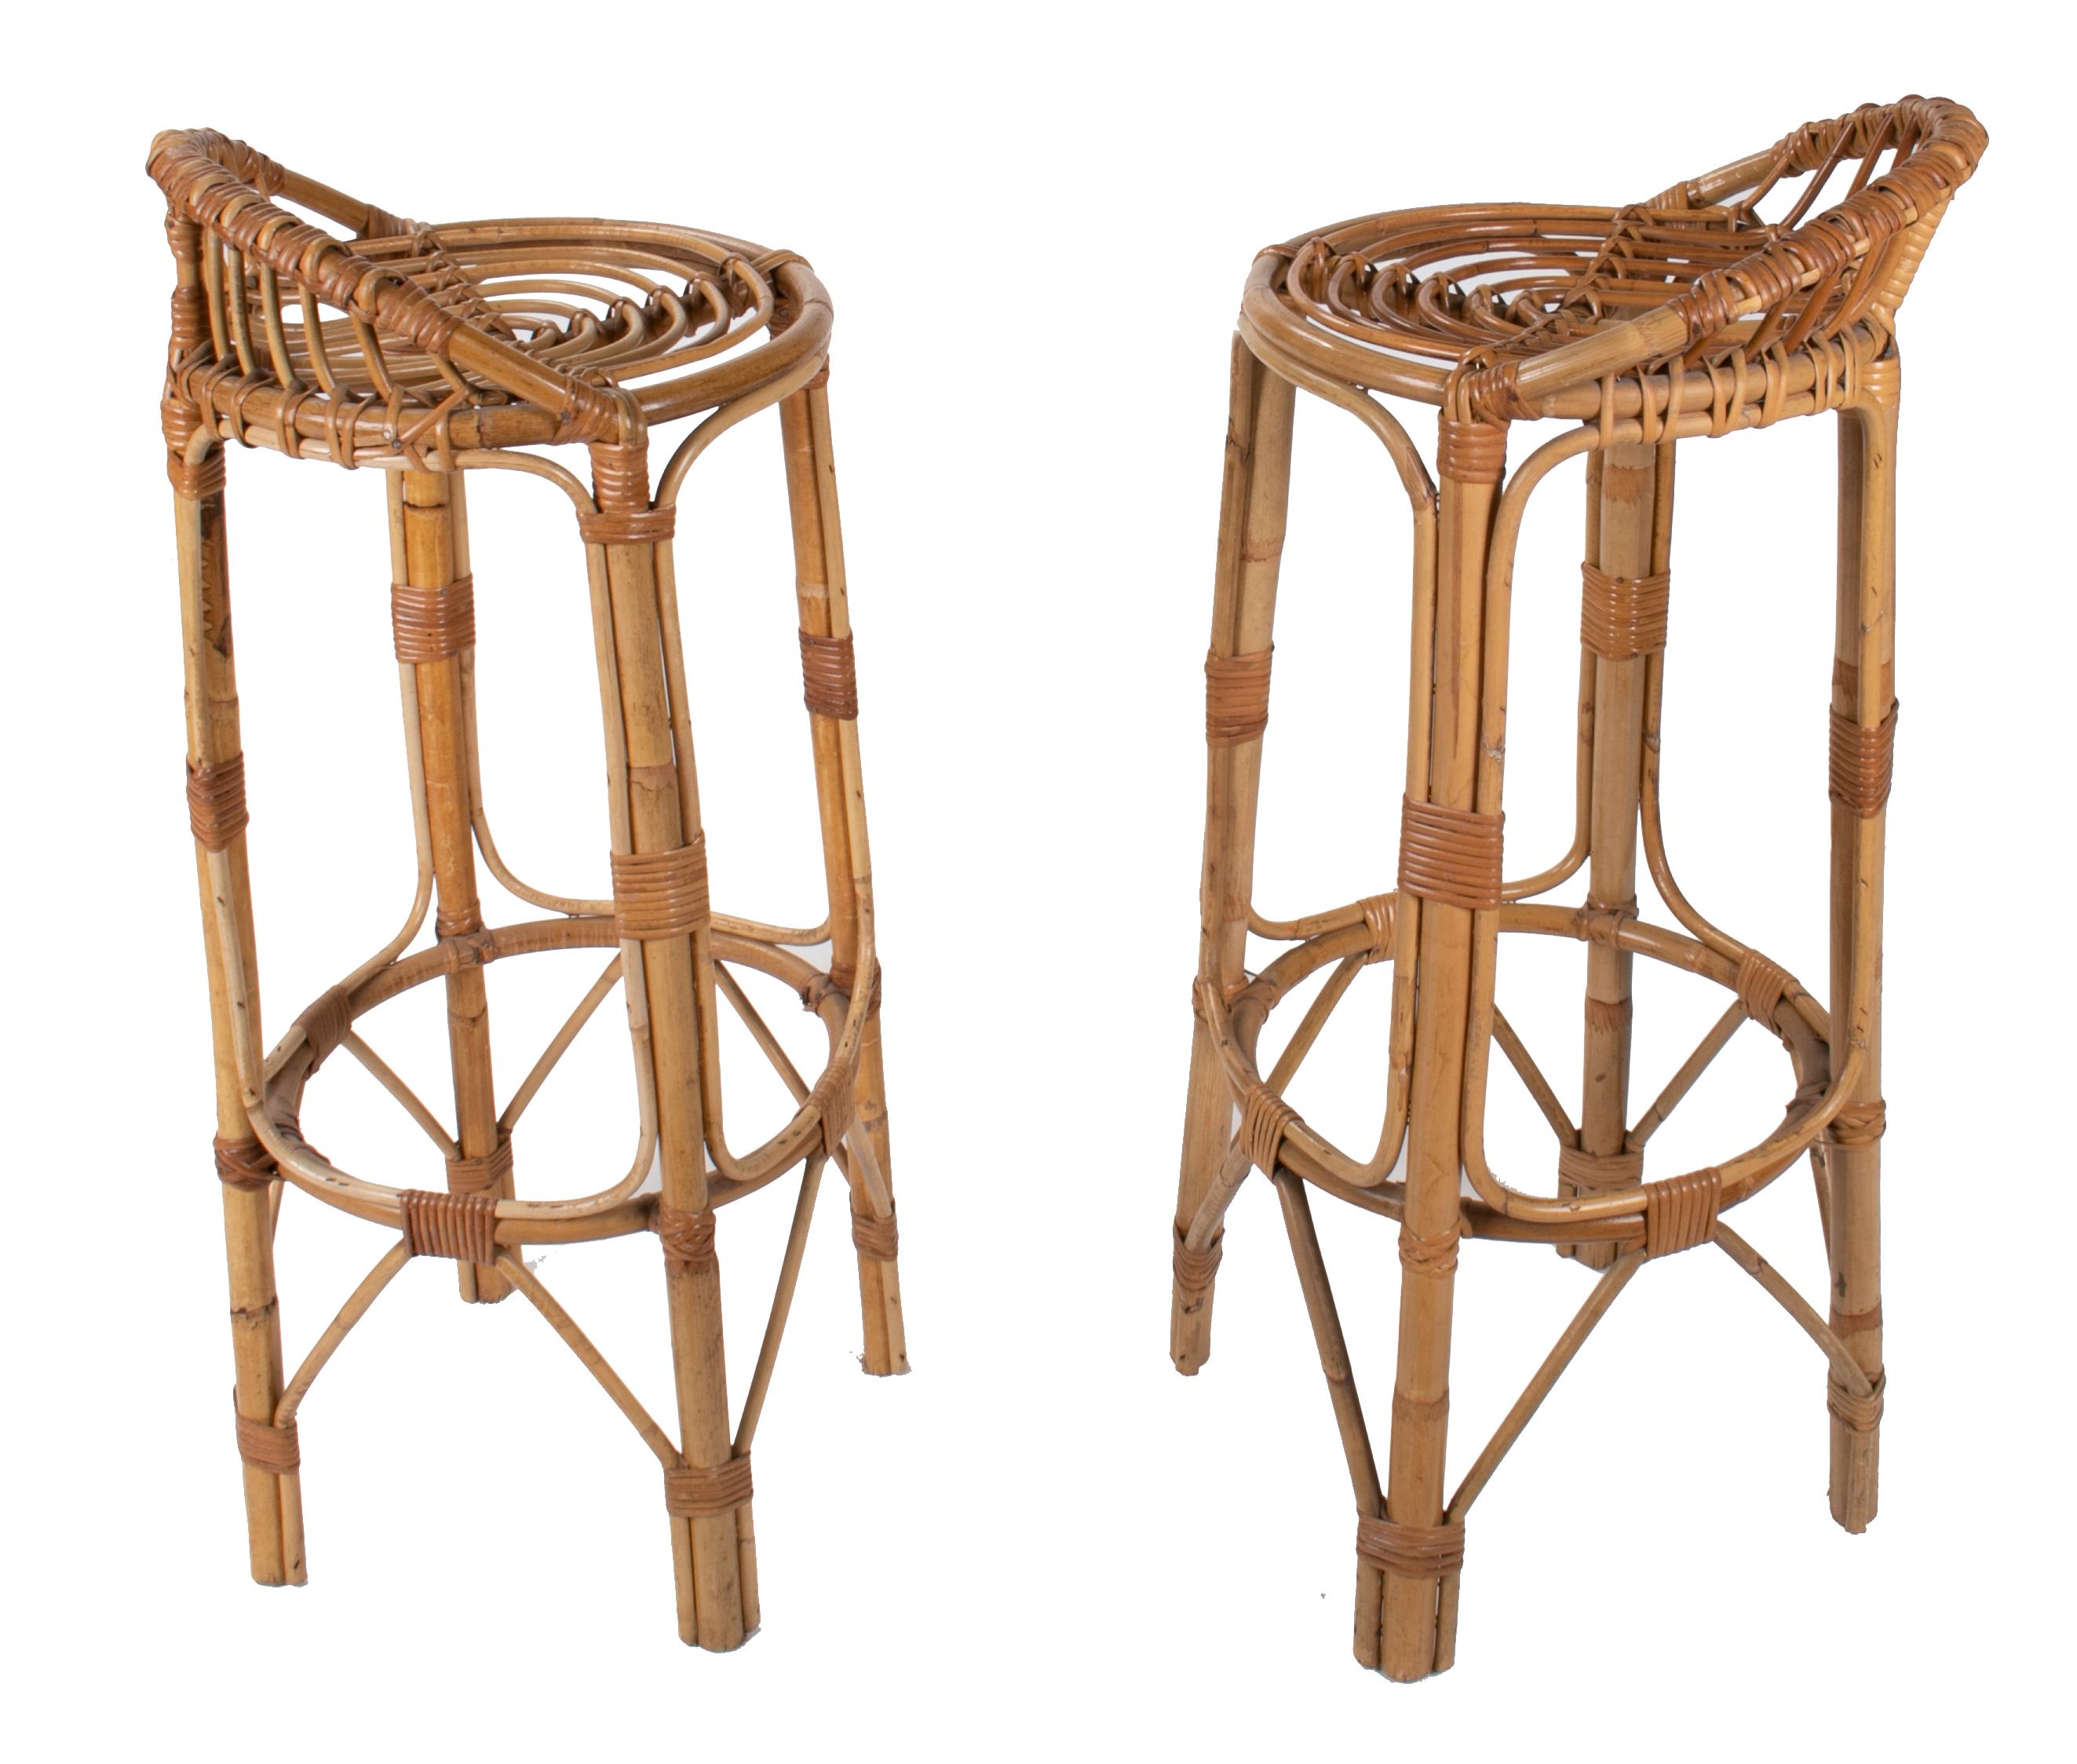 1970s Spanish handmade pair of wicker and bamboo stools.